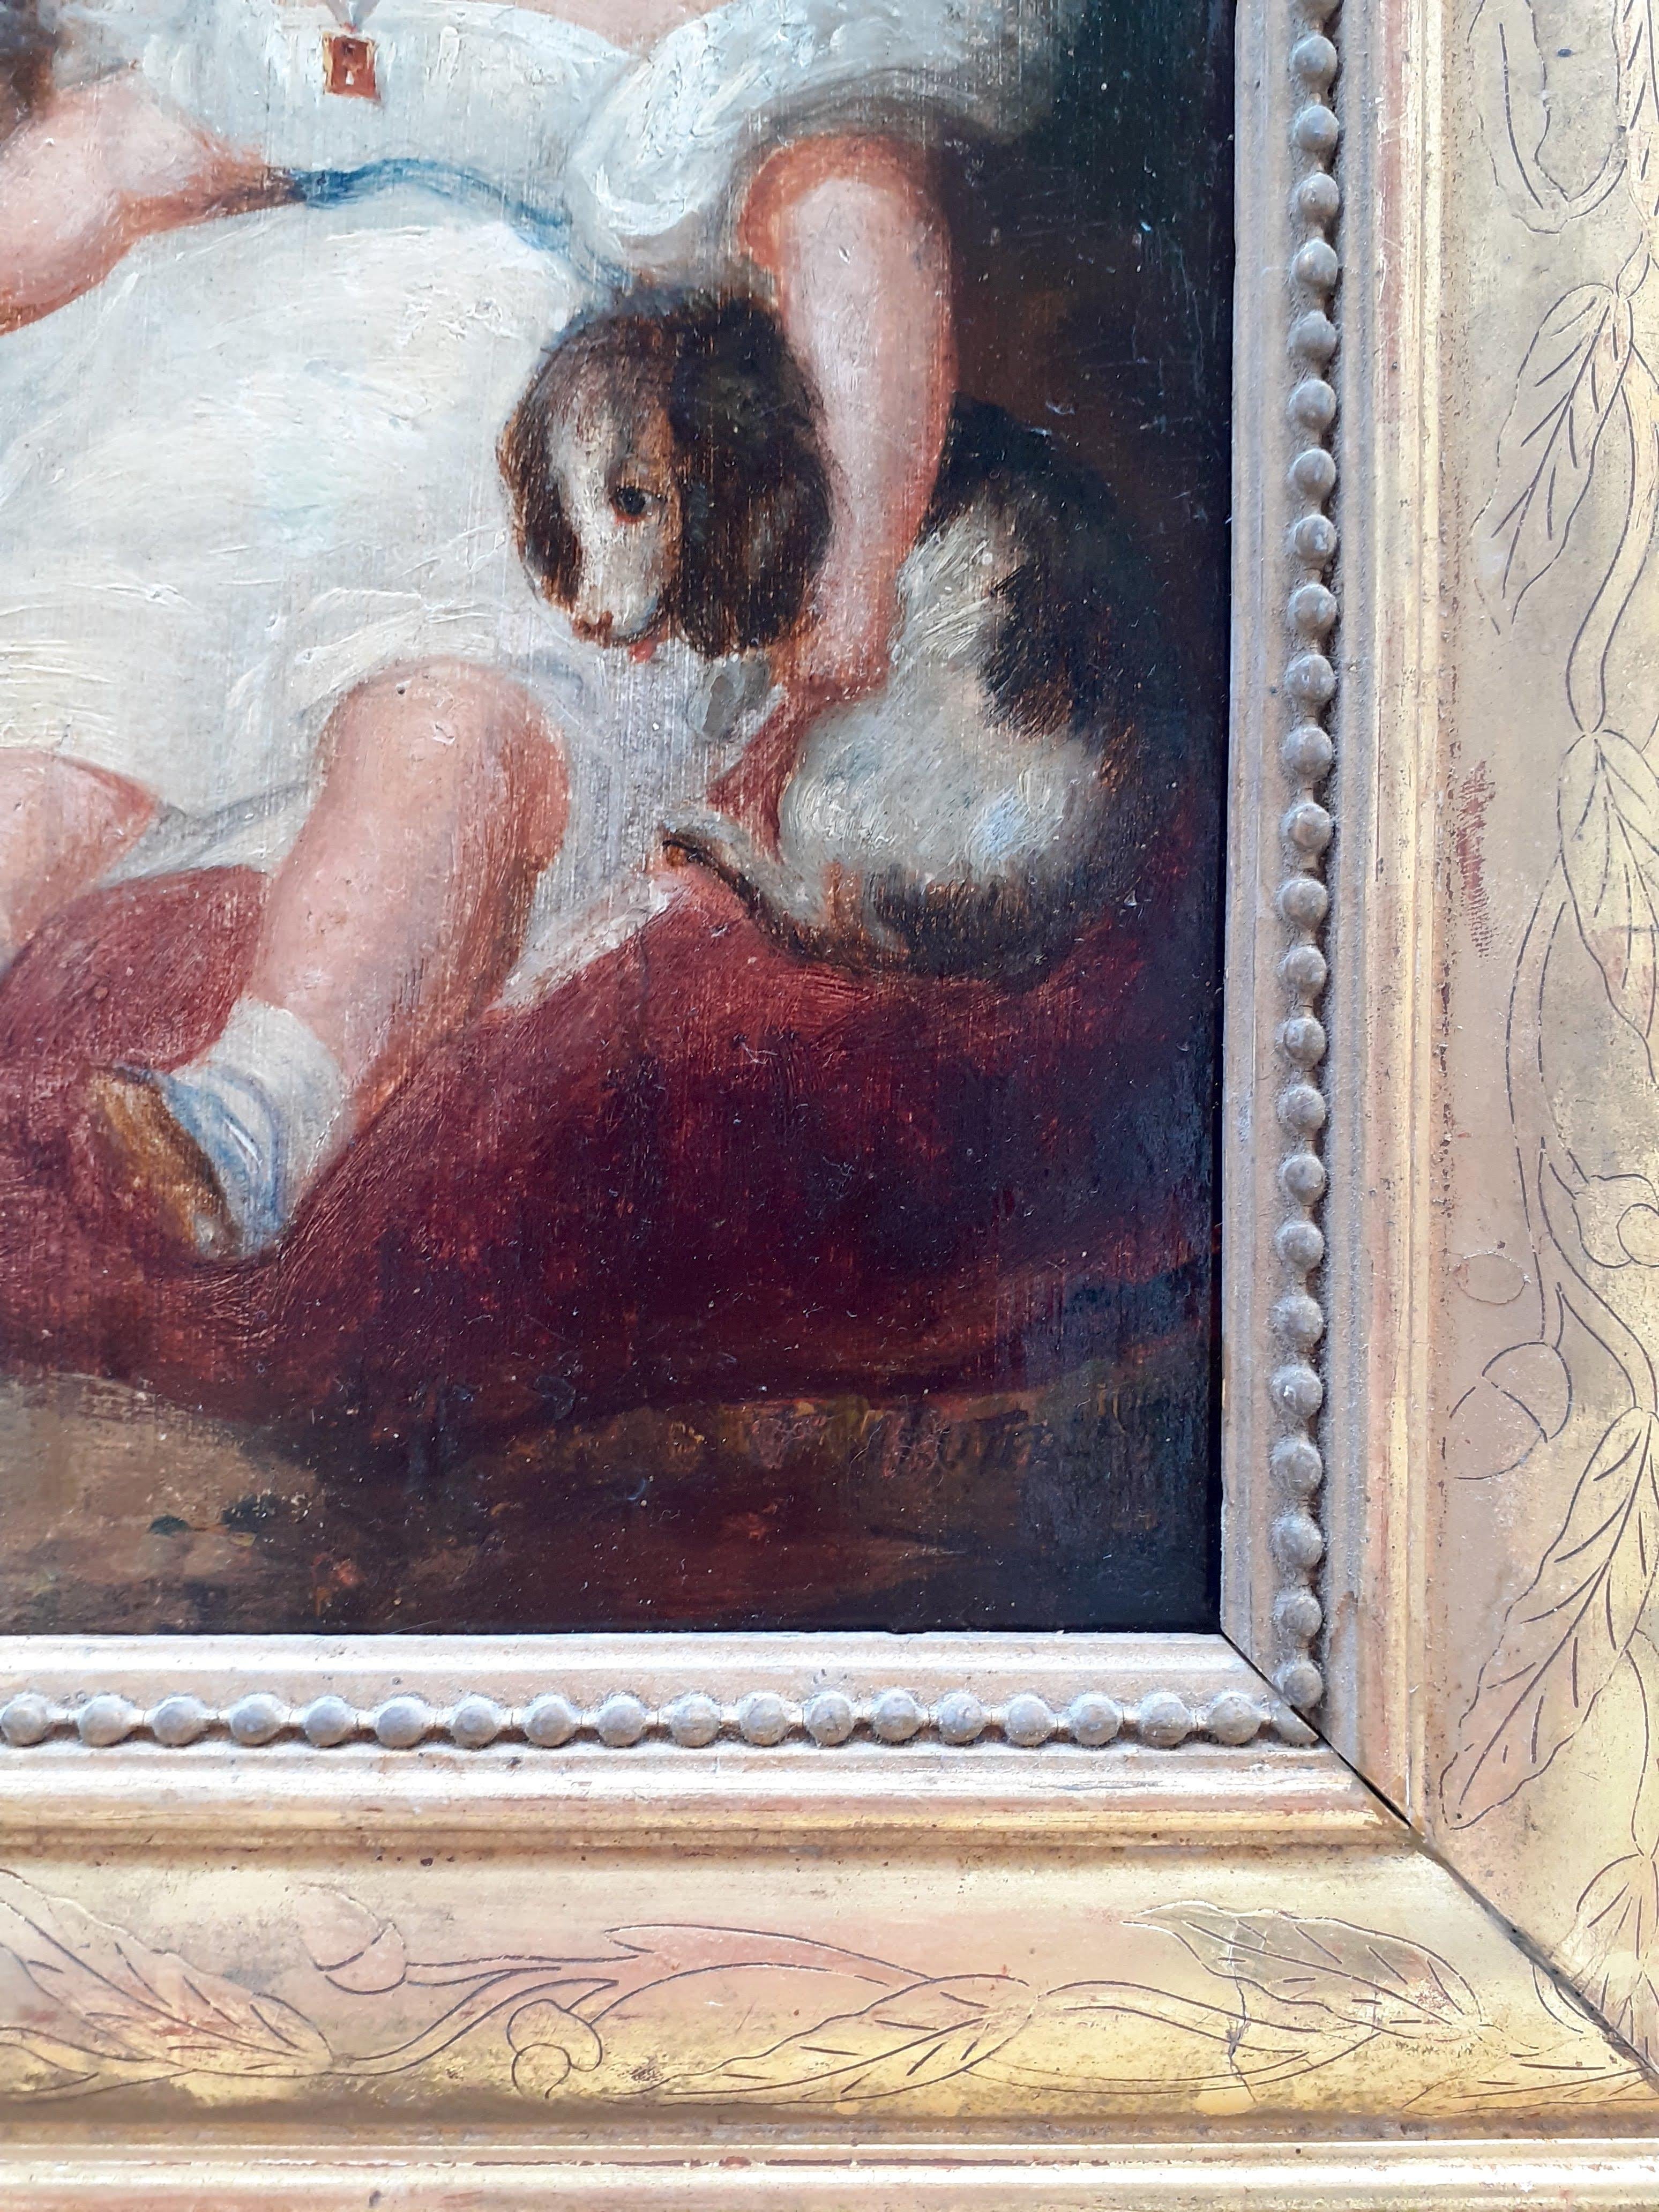 Une scène familiale douce et intime par le plus rare des artistes : Henri-Louis-Hippolyte Poterlet (1804-1835), enfant prodige français du début du XIXe siècle.

Poterlet était un ami proche et un confident d'Eugène Delacroix, le chef de file du